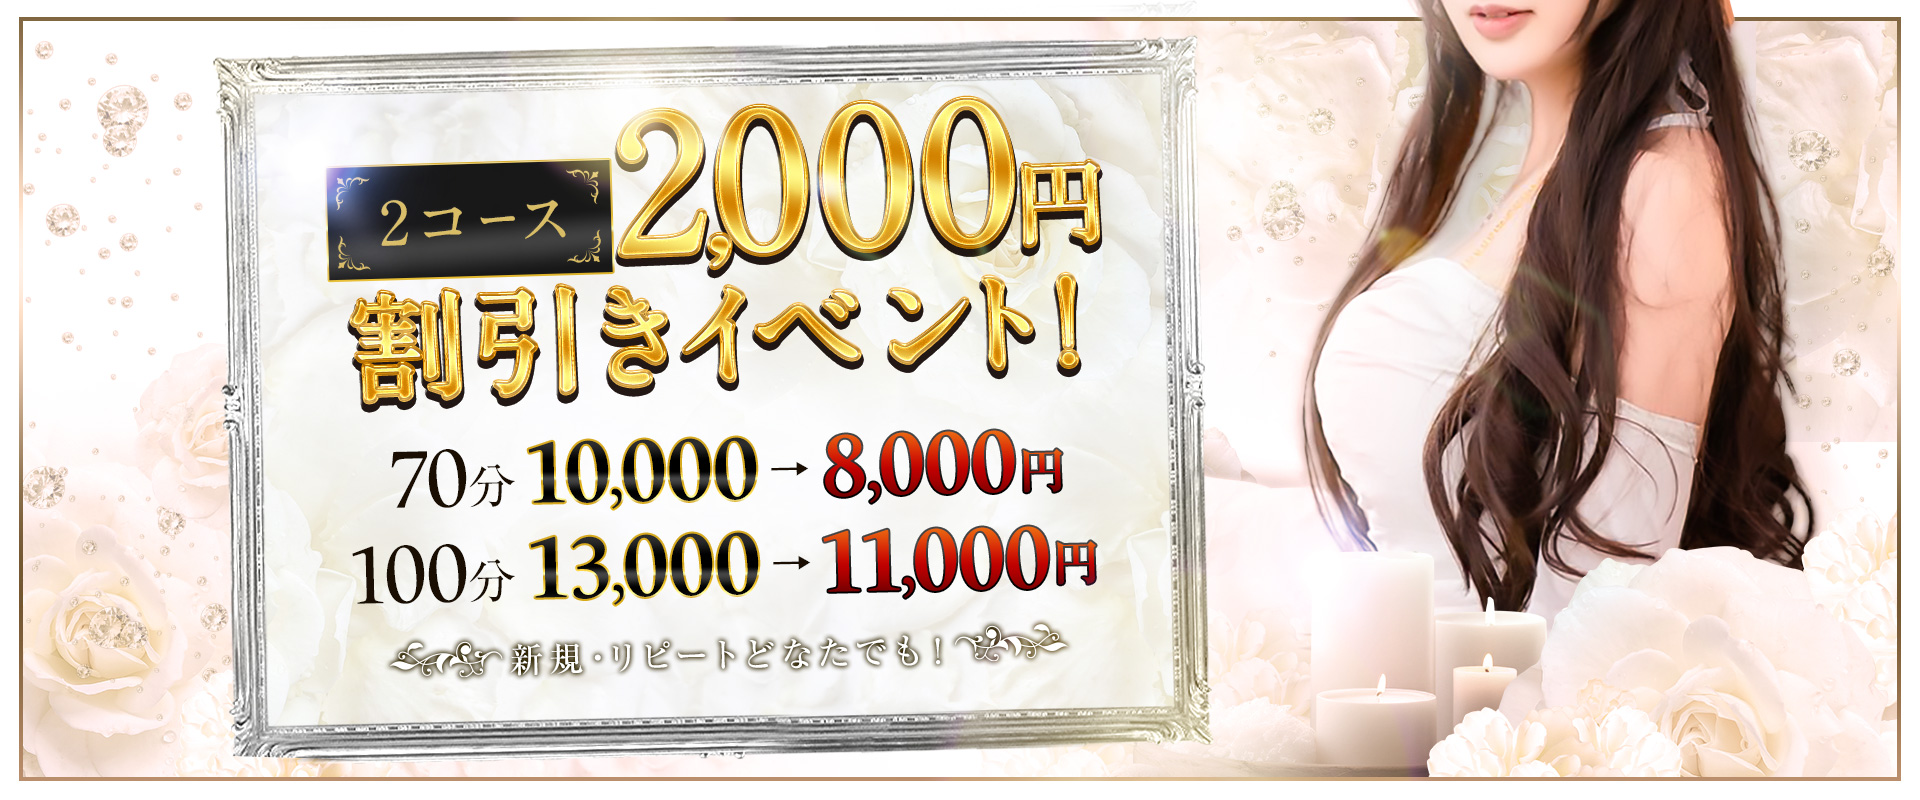 2000円割引イベント